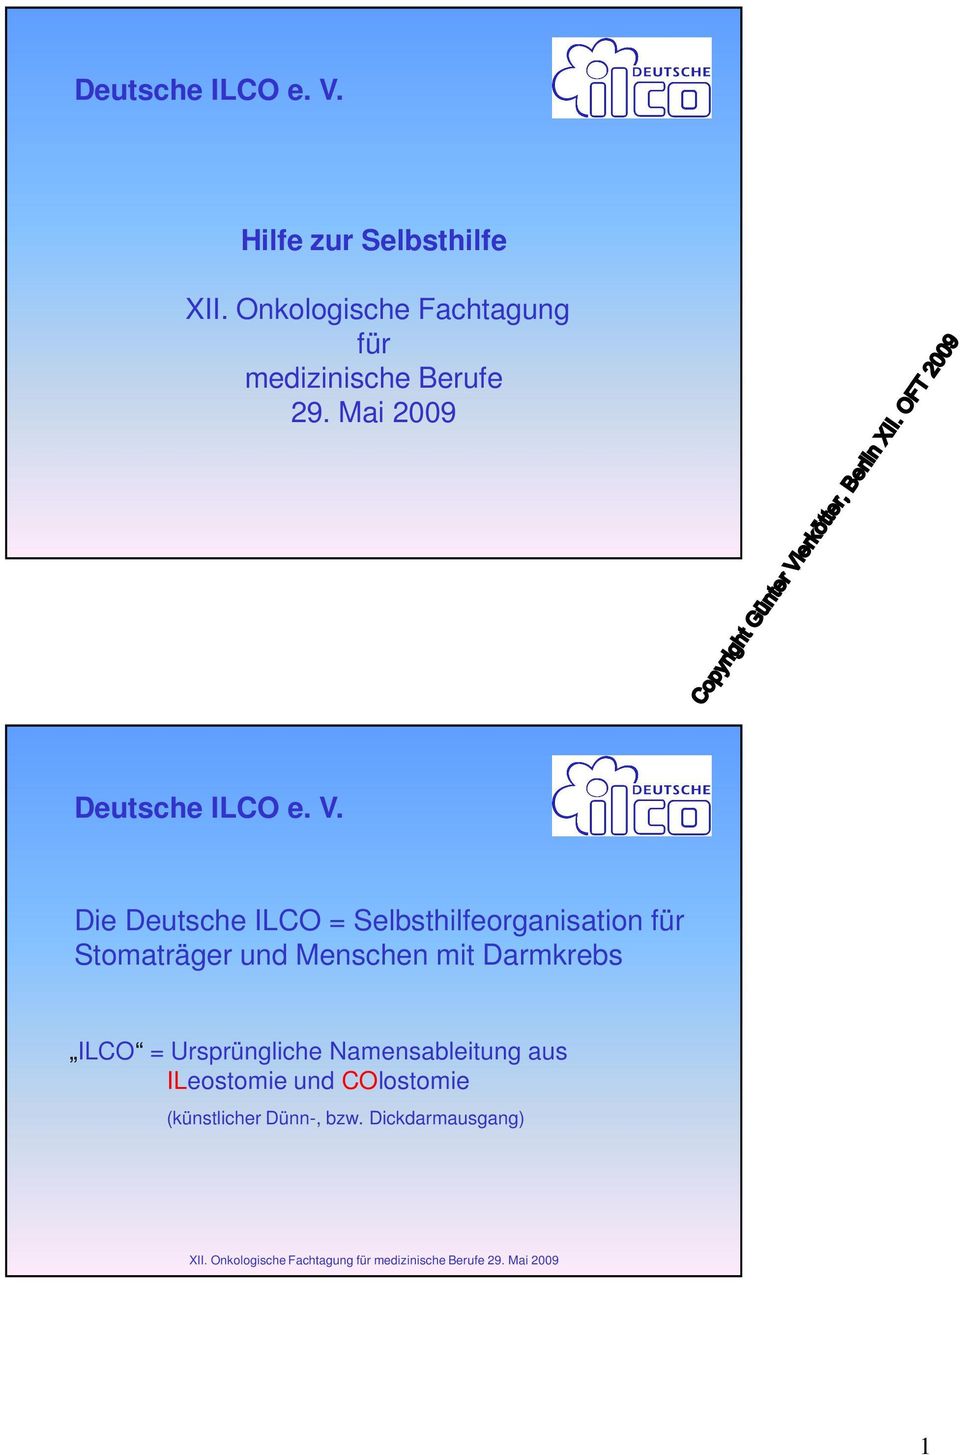 Die Deutsche ILCO = Selbsthilfeorganisation für Stomaträger und Menschen mit